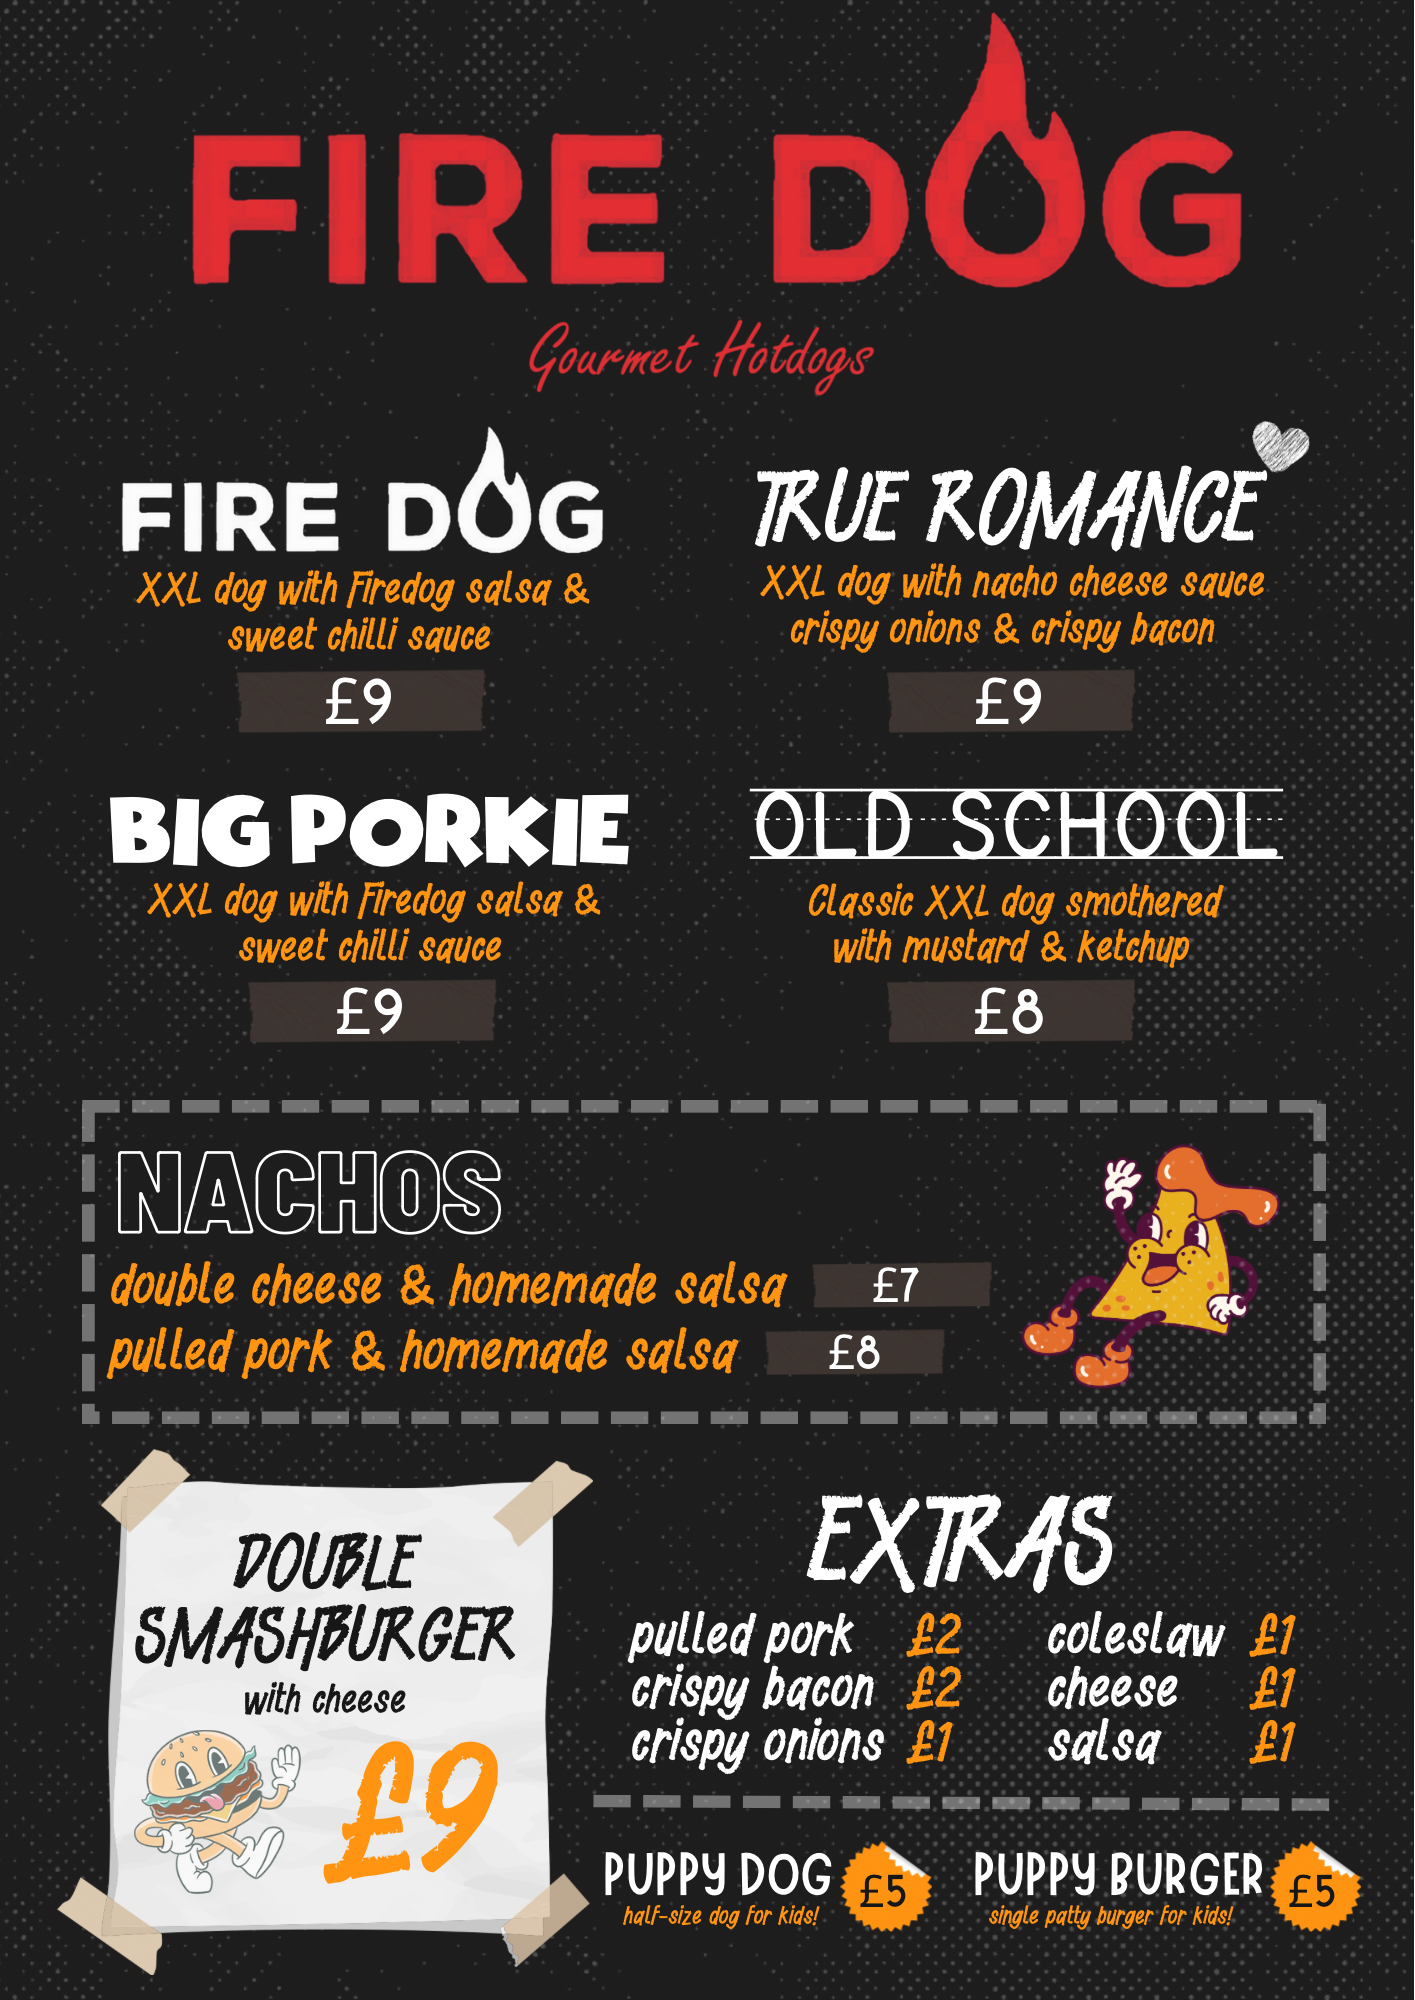 Firedog new menu